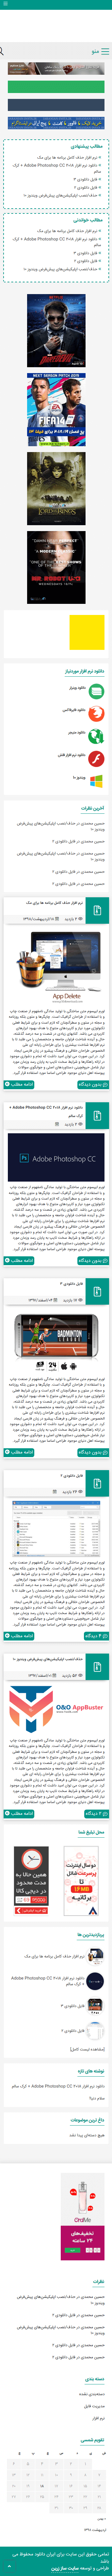 تصویر سایت ایران دانلود در حالت موبایل